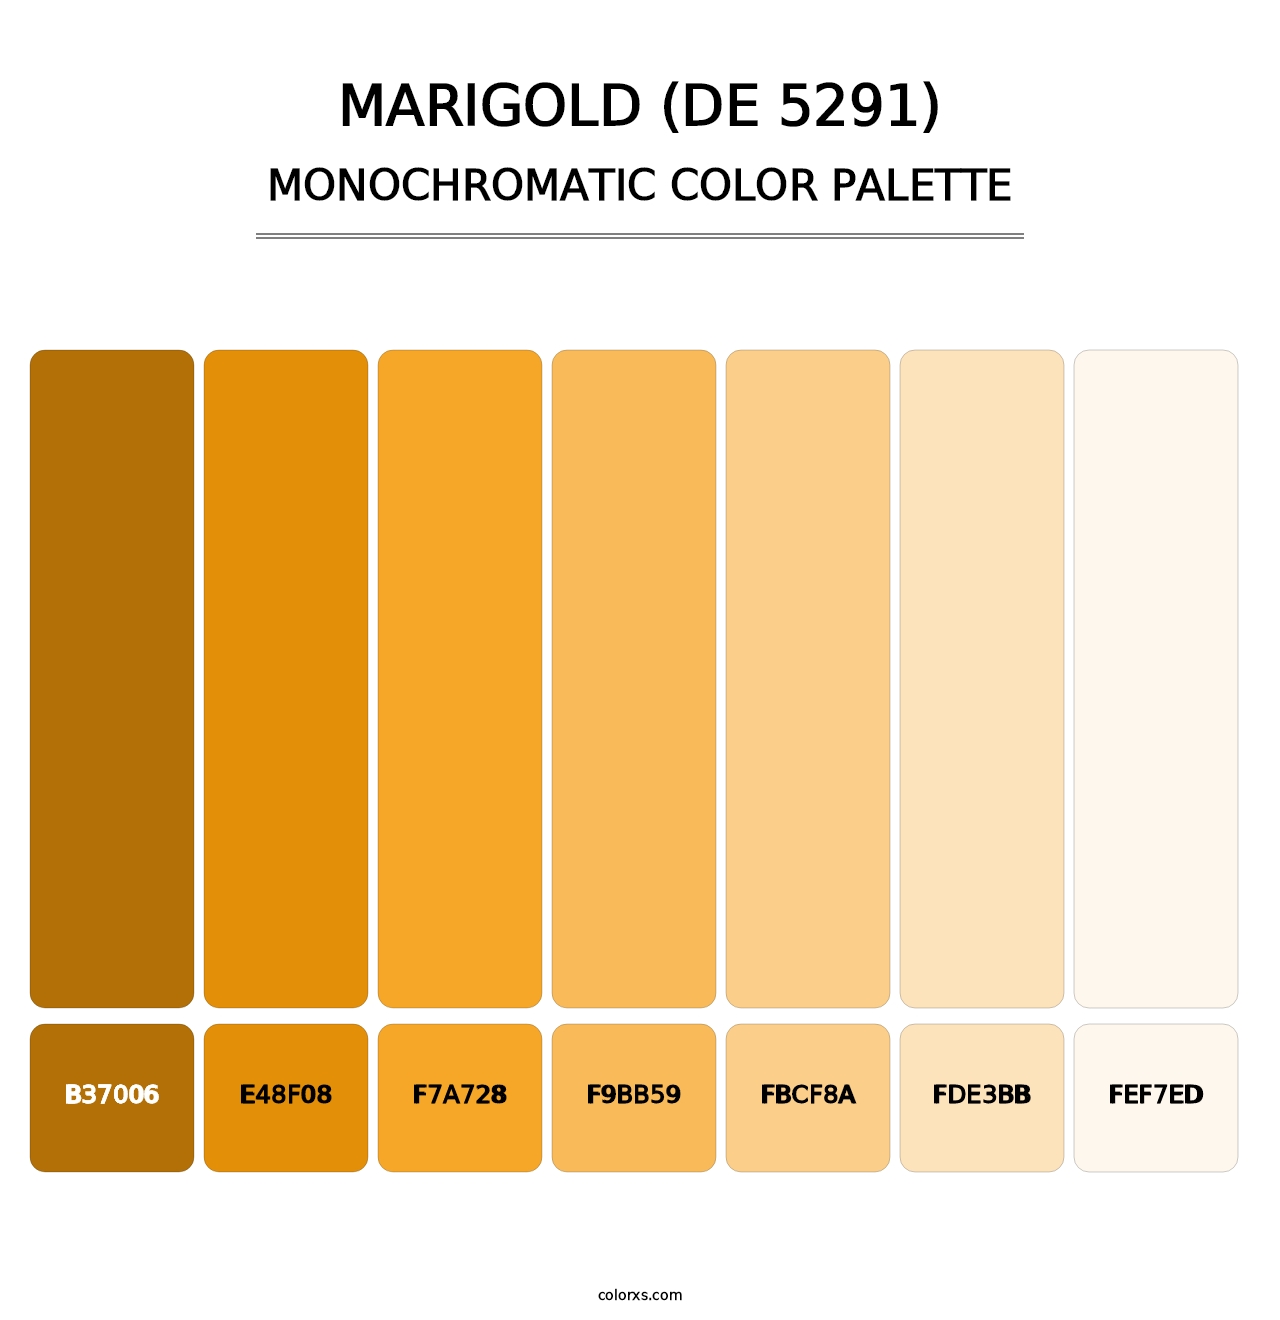 Marigold (DE 5291) - Monochromatic Color Palette